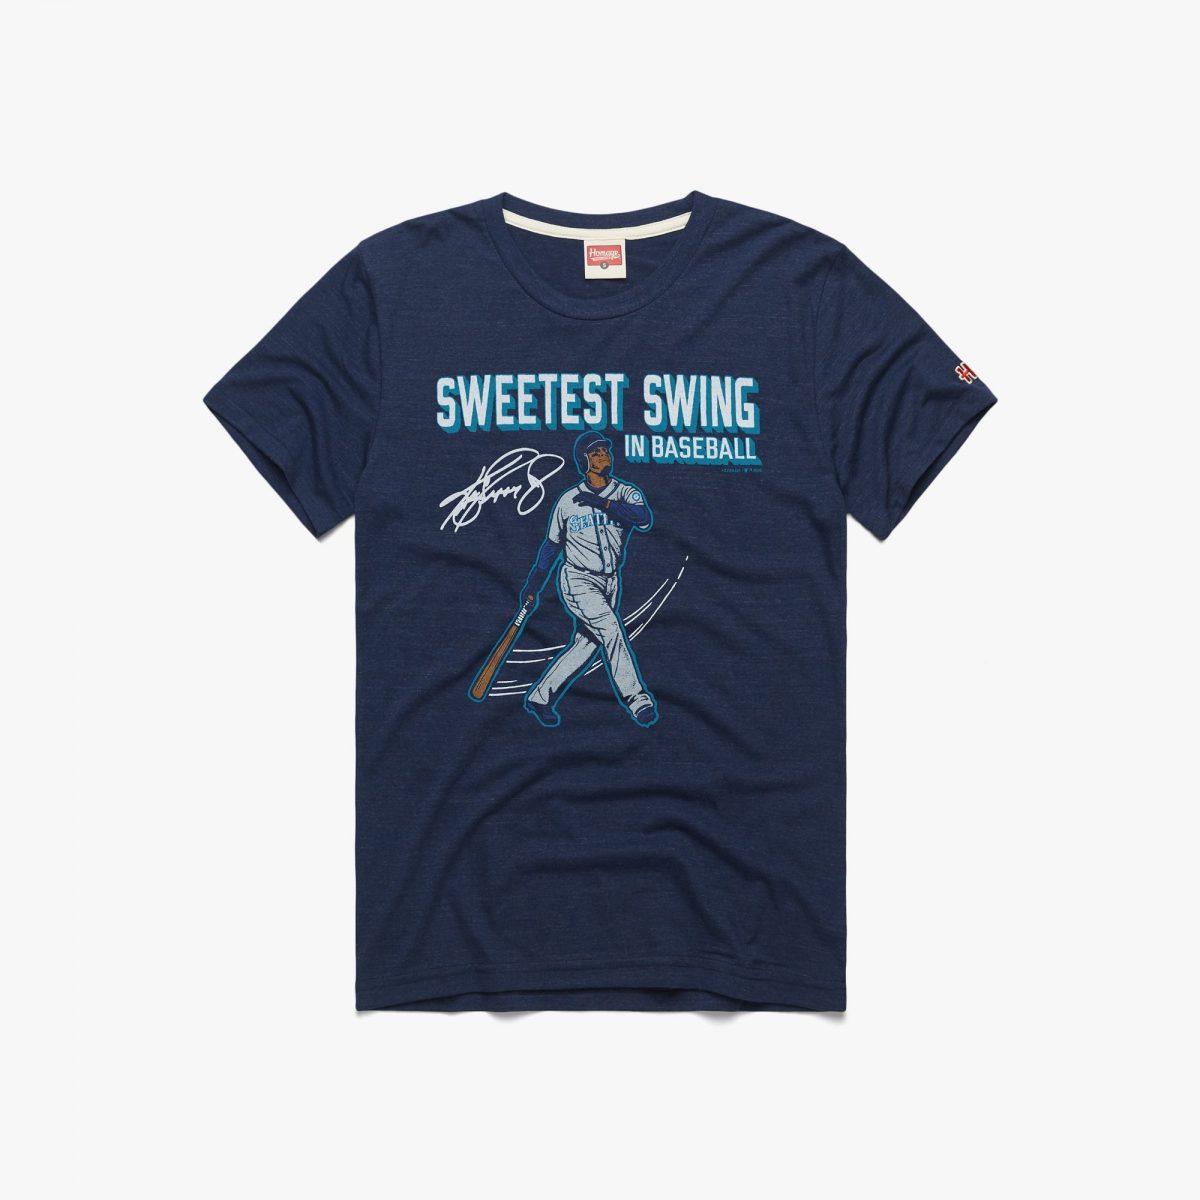 Ken Griffey Jr Sweetest Swing In Baseball